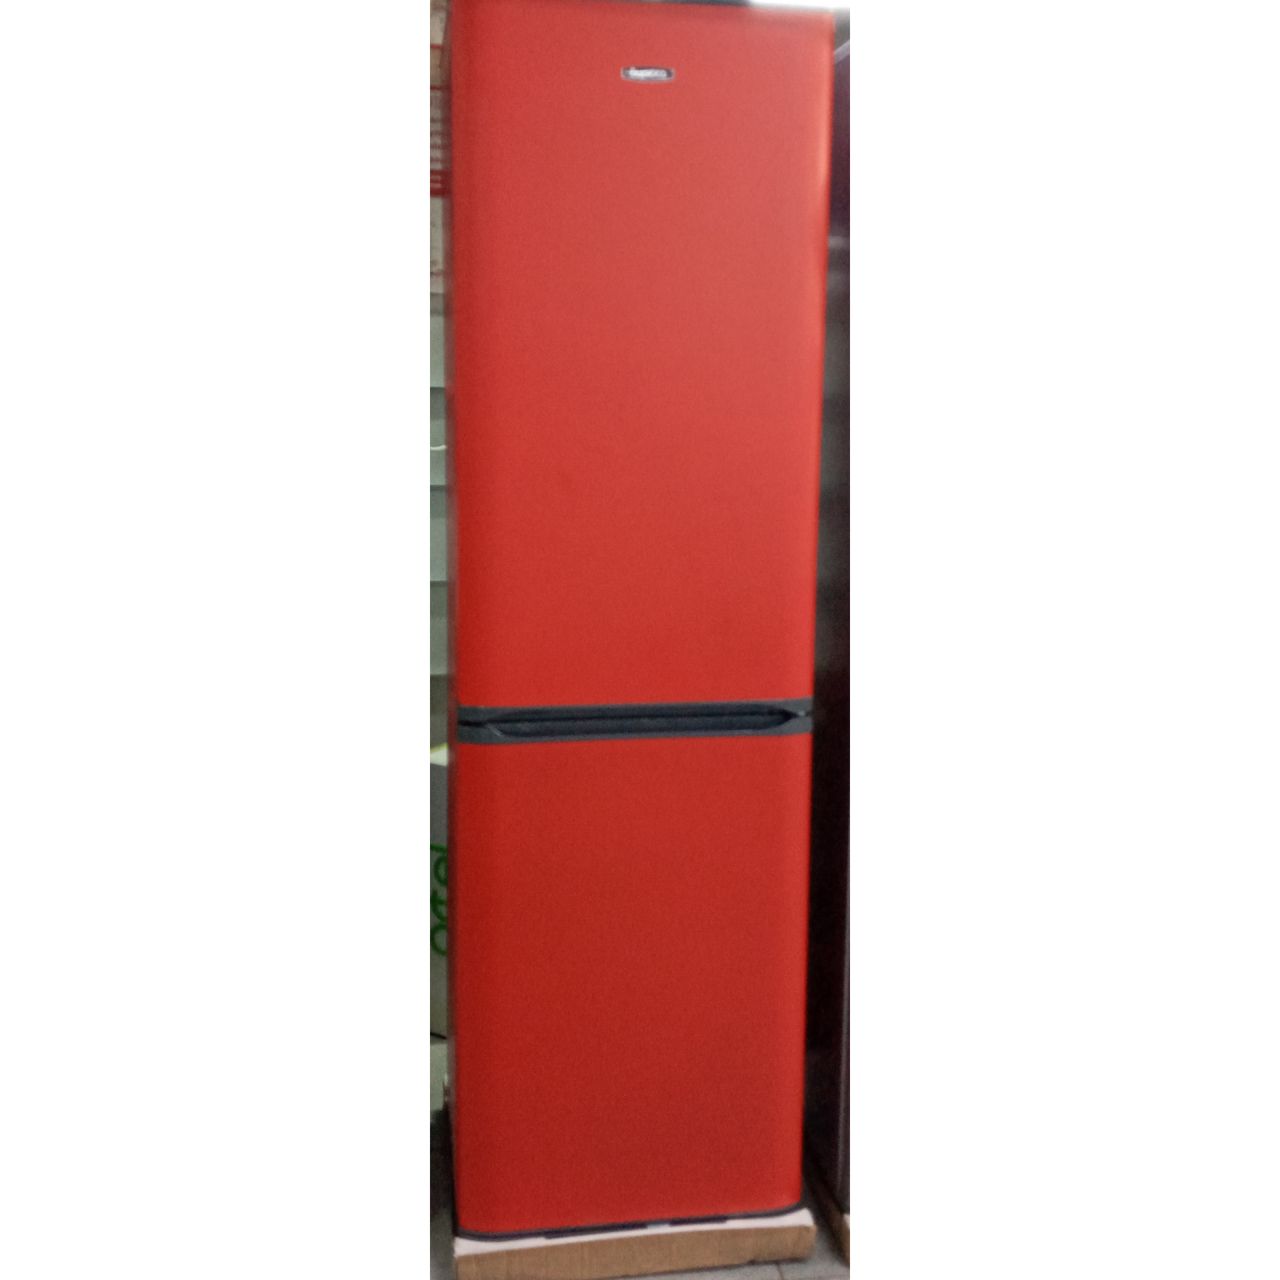 Холодильник двухкамерный Бирюса 325 литров